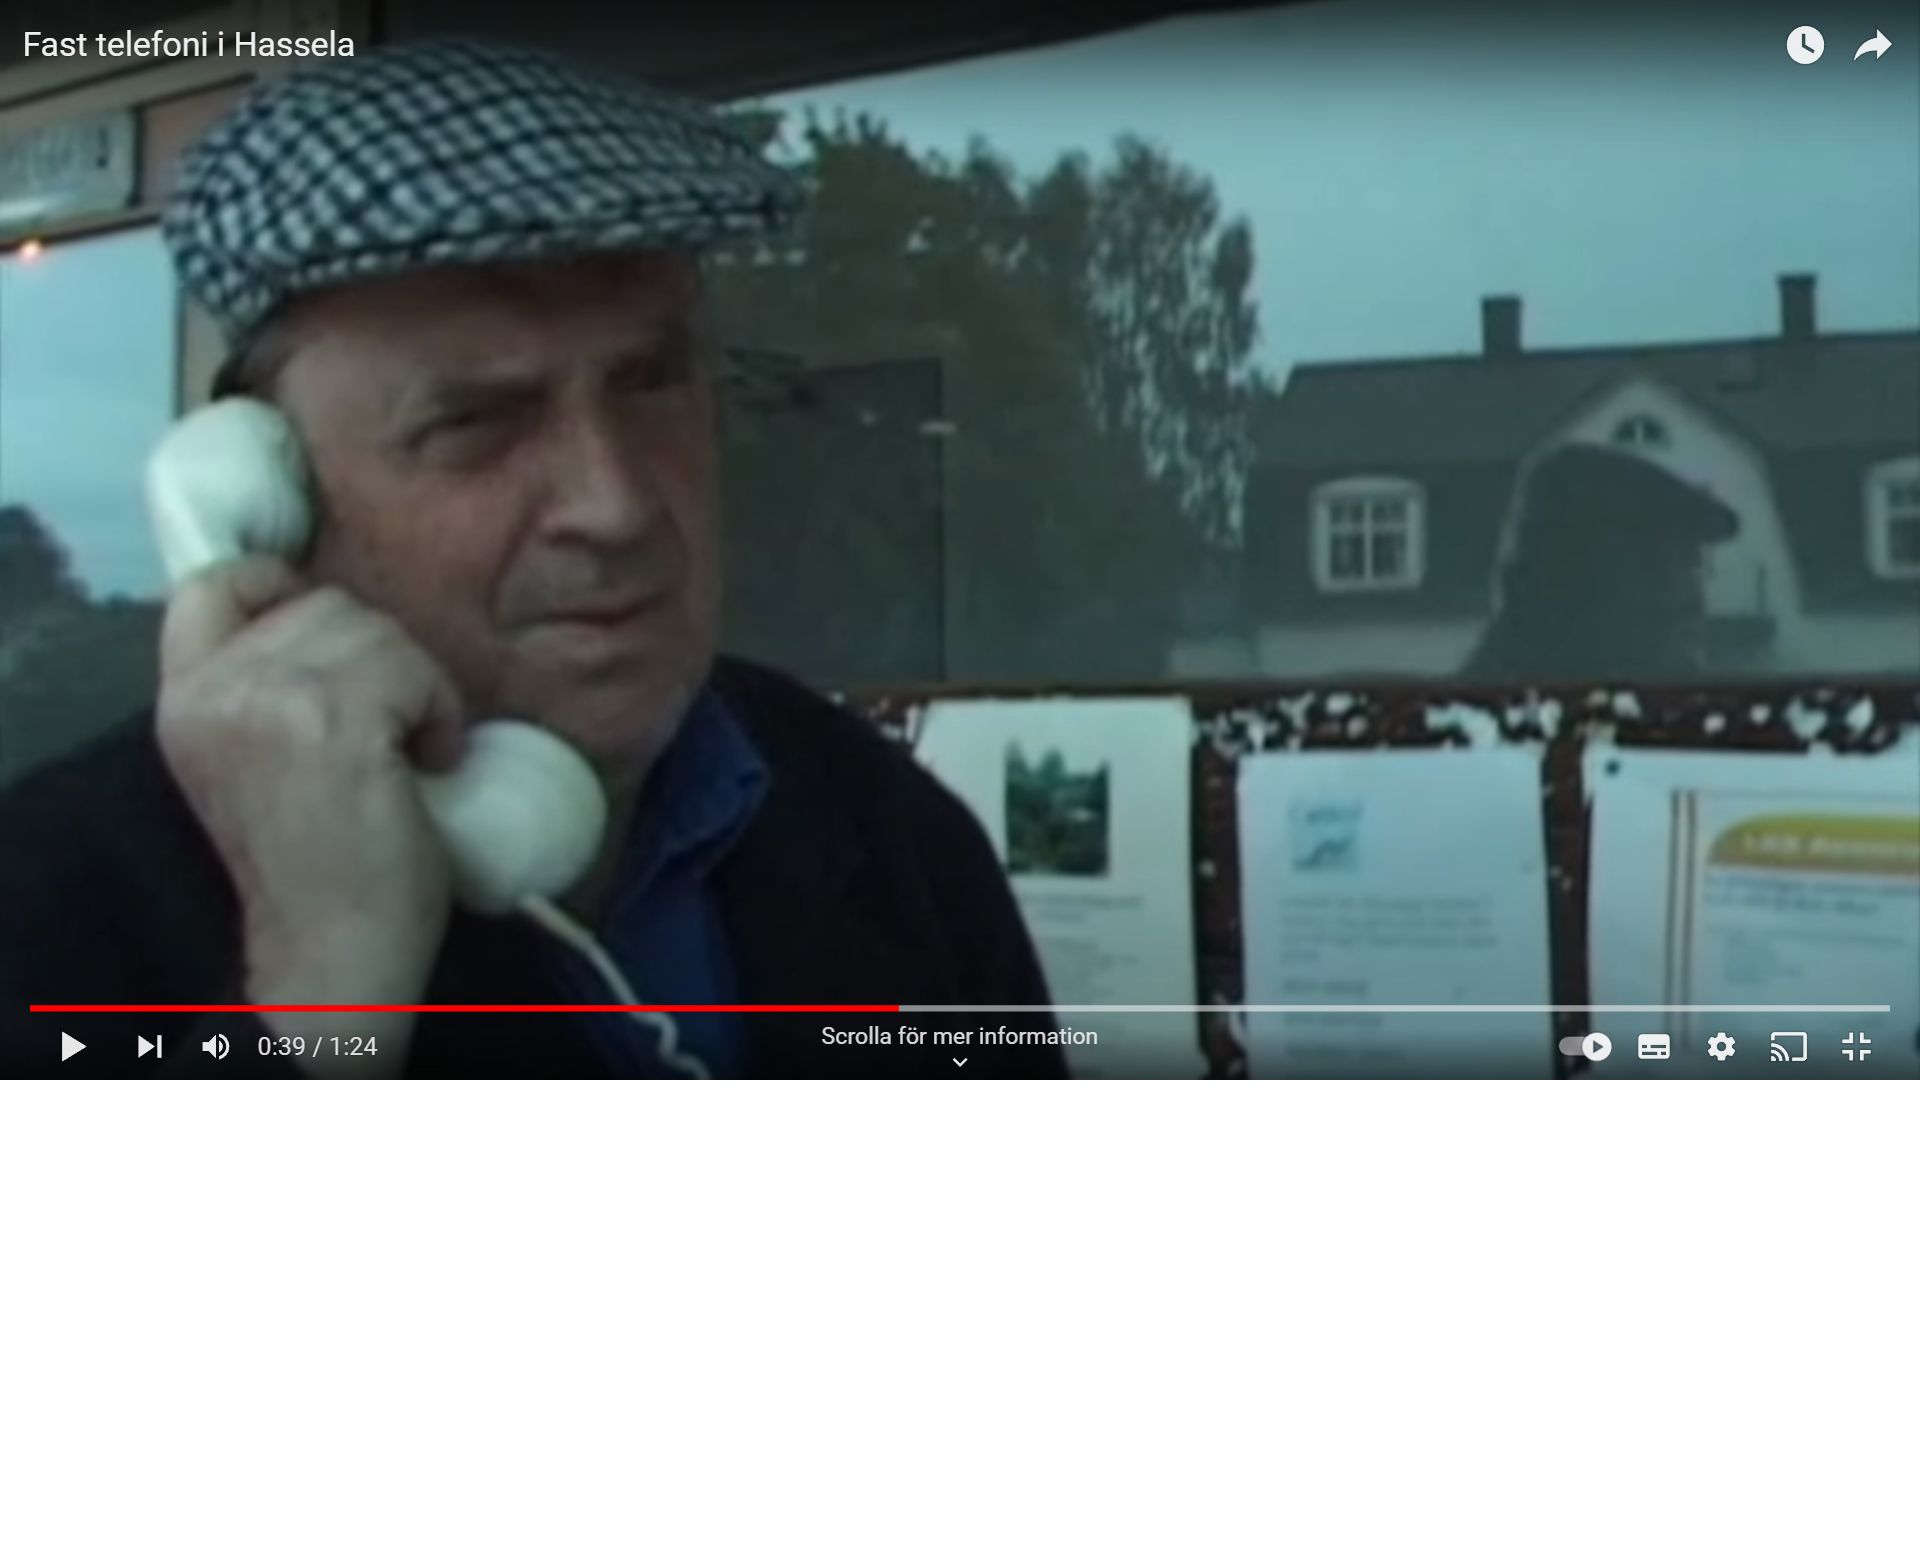 Fast telefoni i Hassela – sevärd kortfilm!